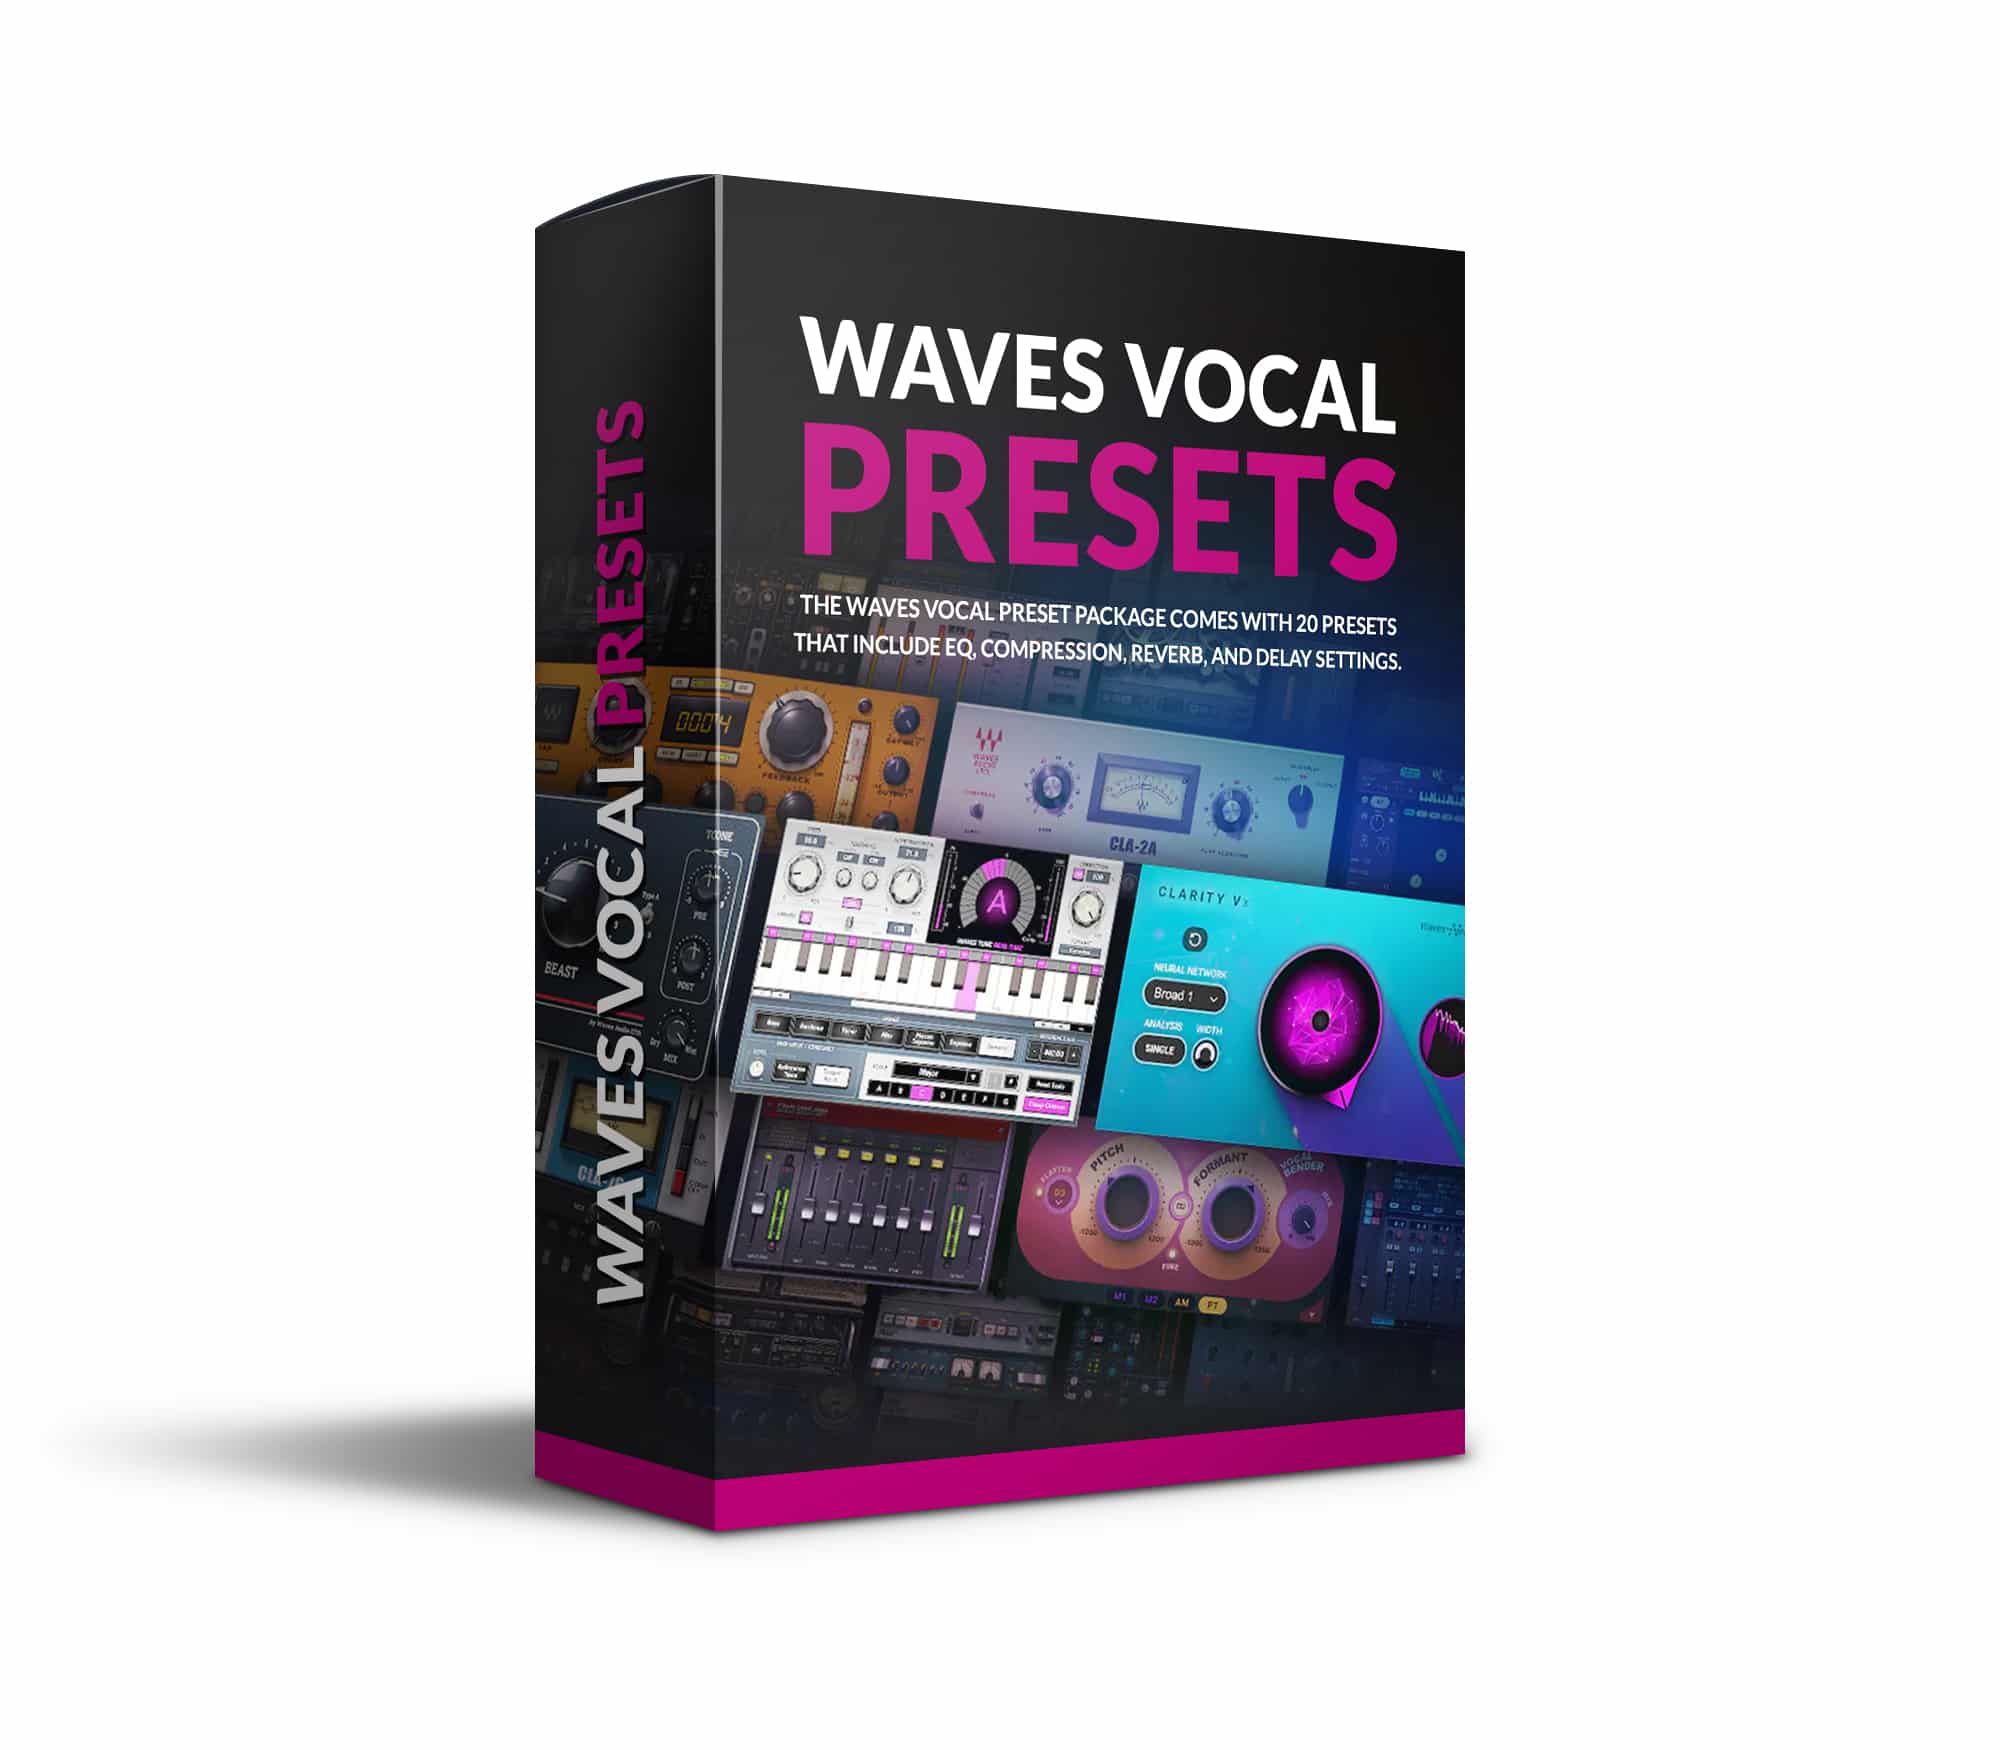 Waves Vocal Presets